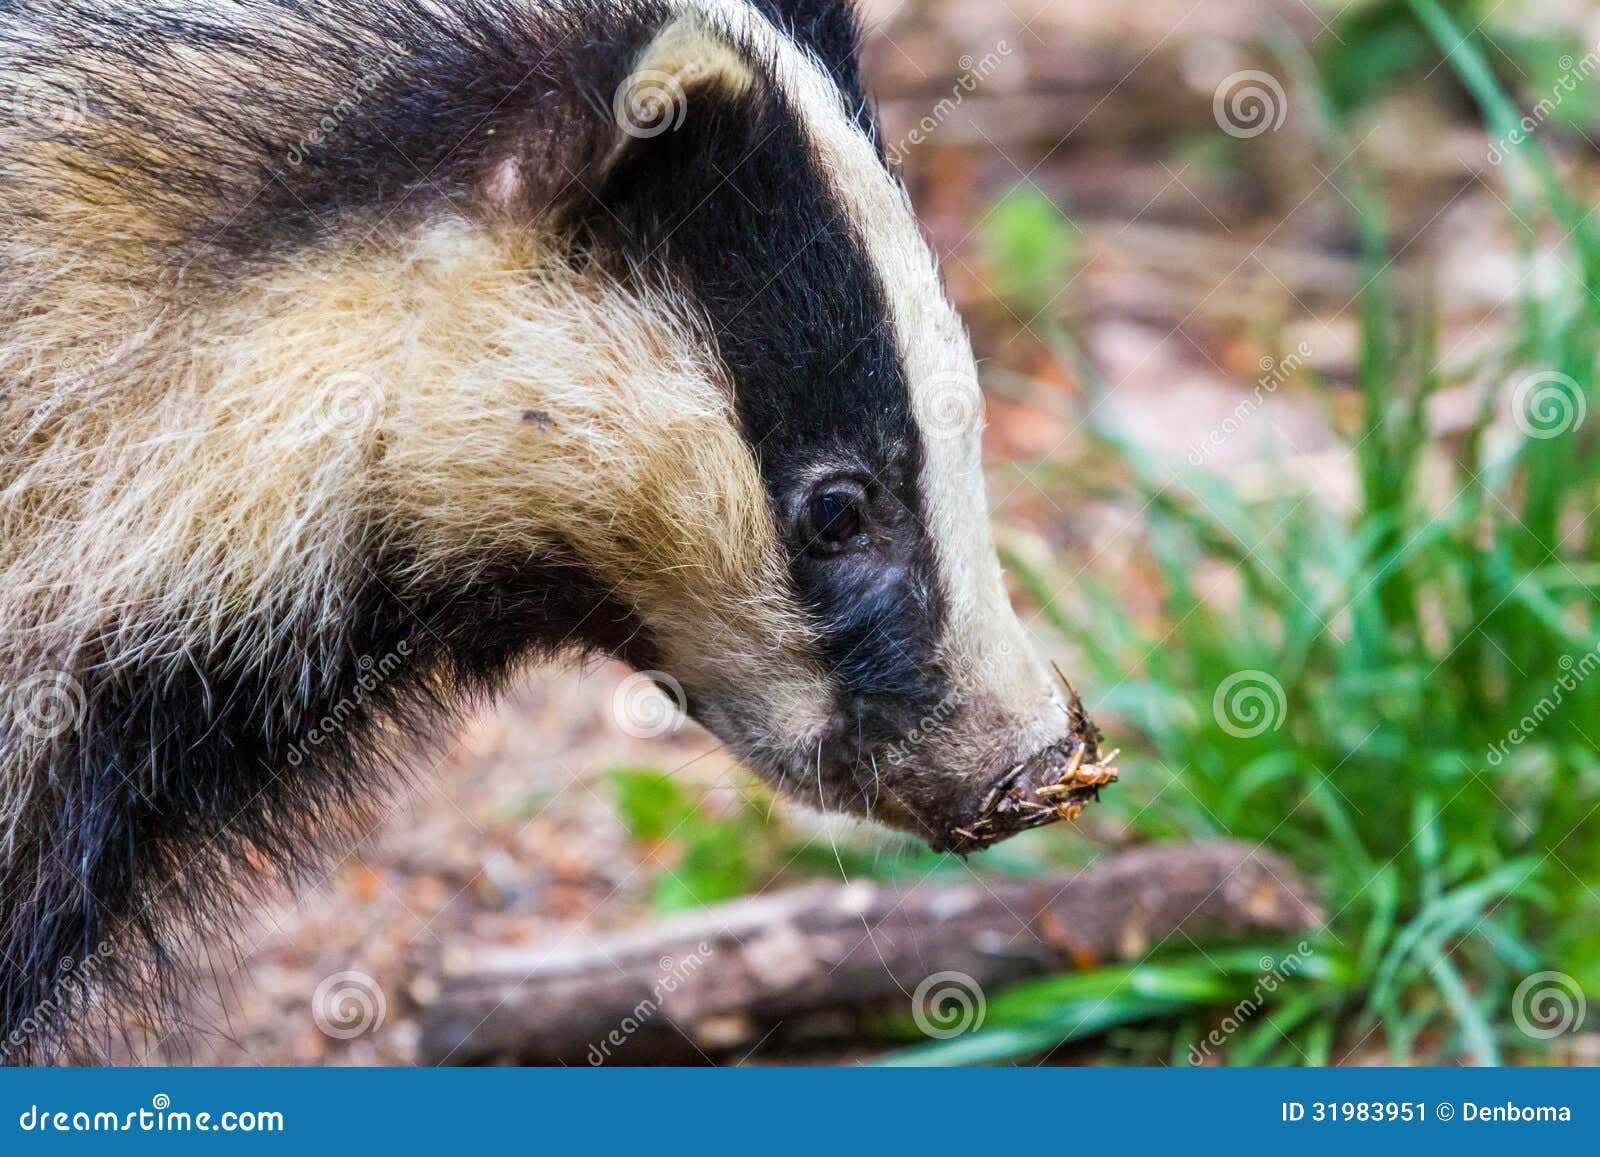 猪獾-非法贸易野生动物与制品鉴别-图片